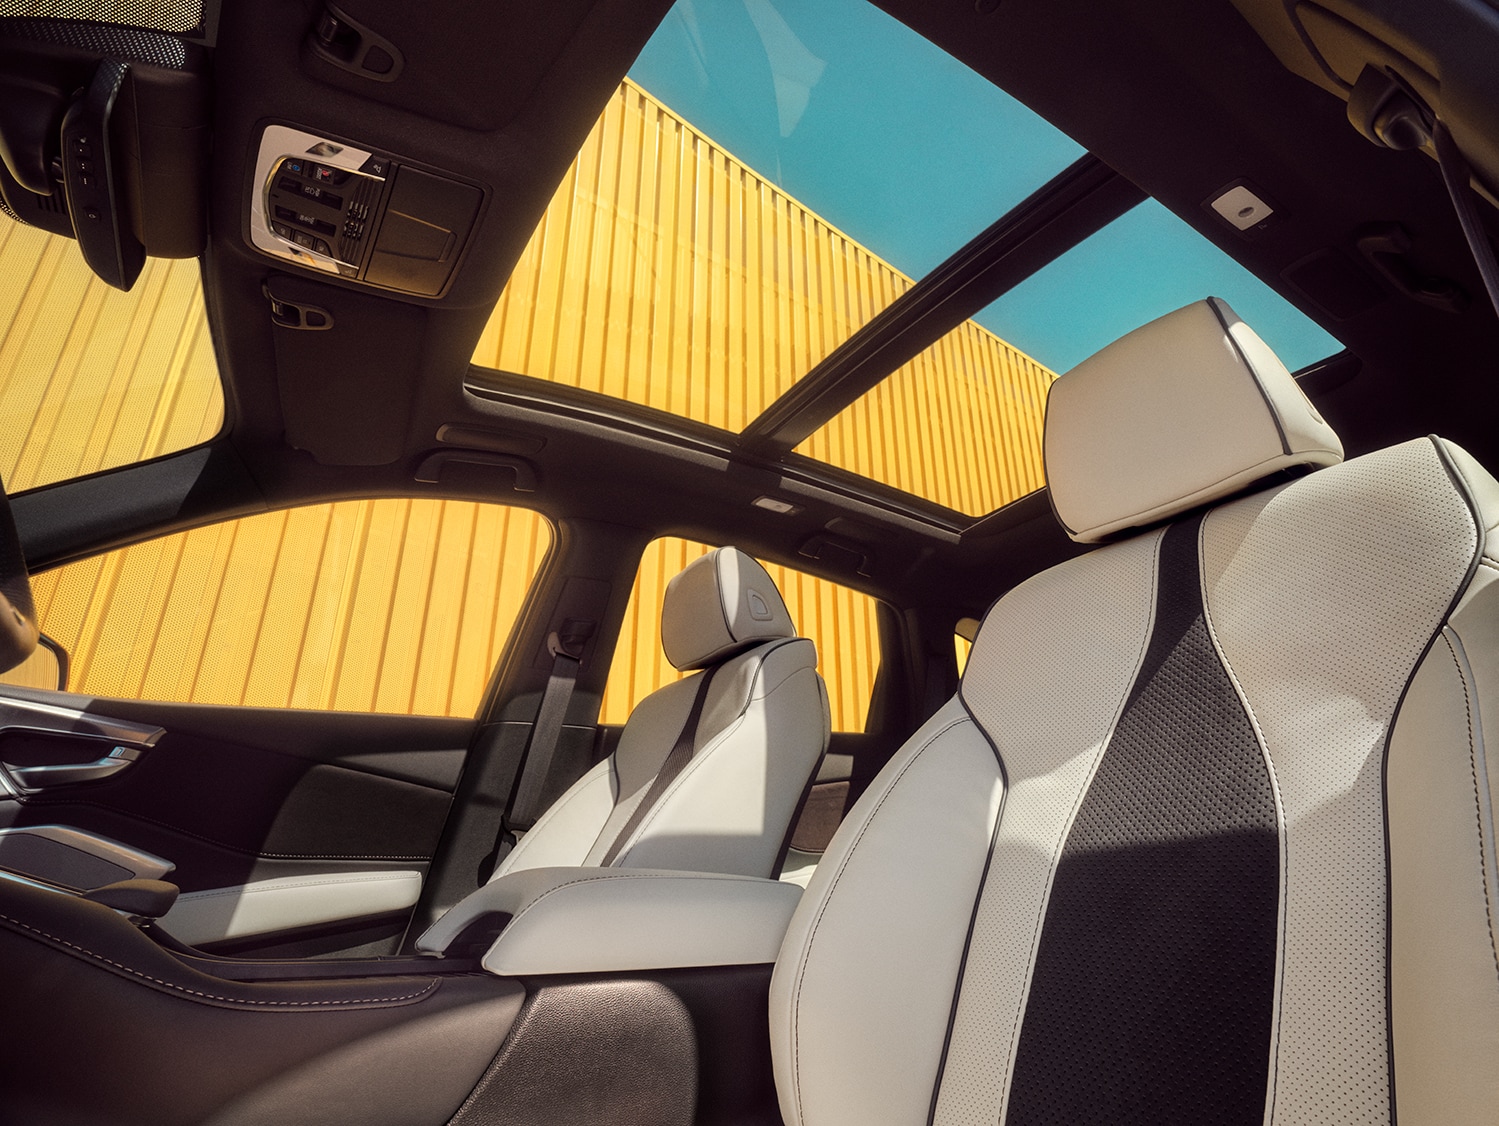 All-New 2022 Acura RDX at Bobby Rahal Acura | 2022 Acura RDX interior seats and sunroof